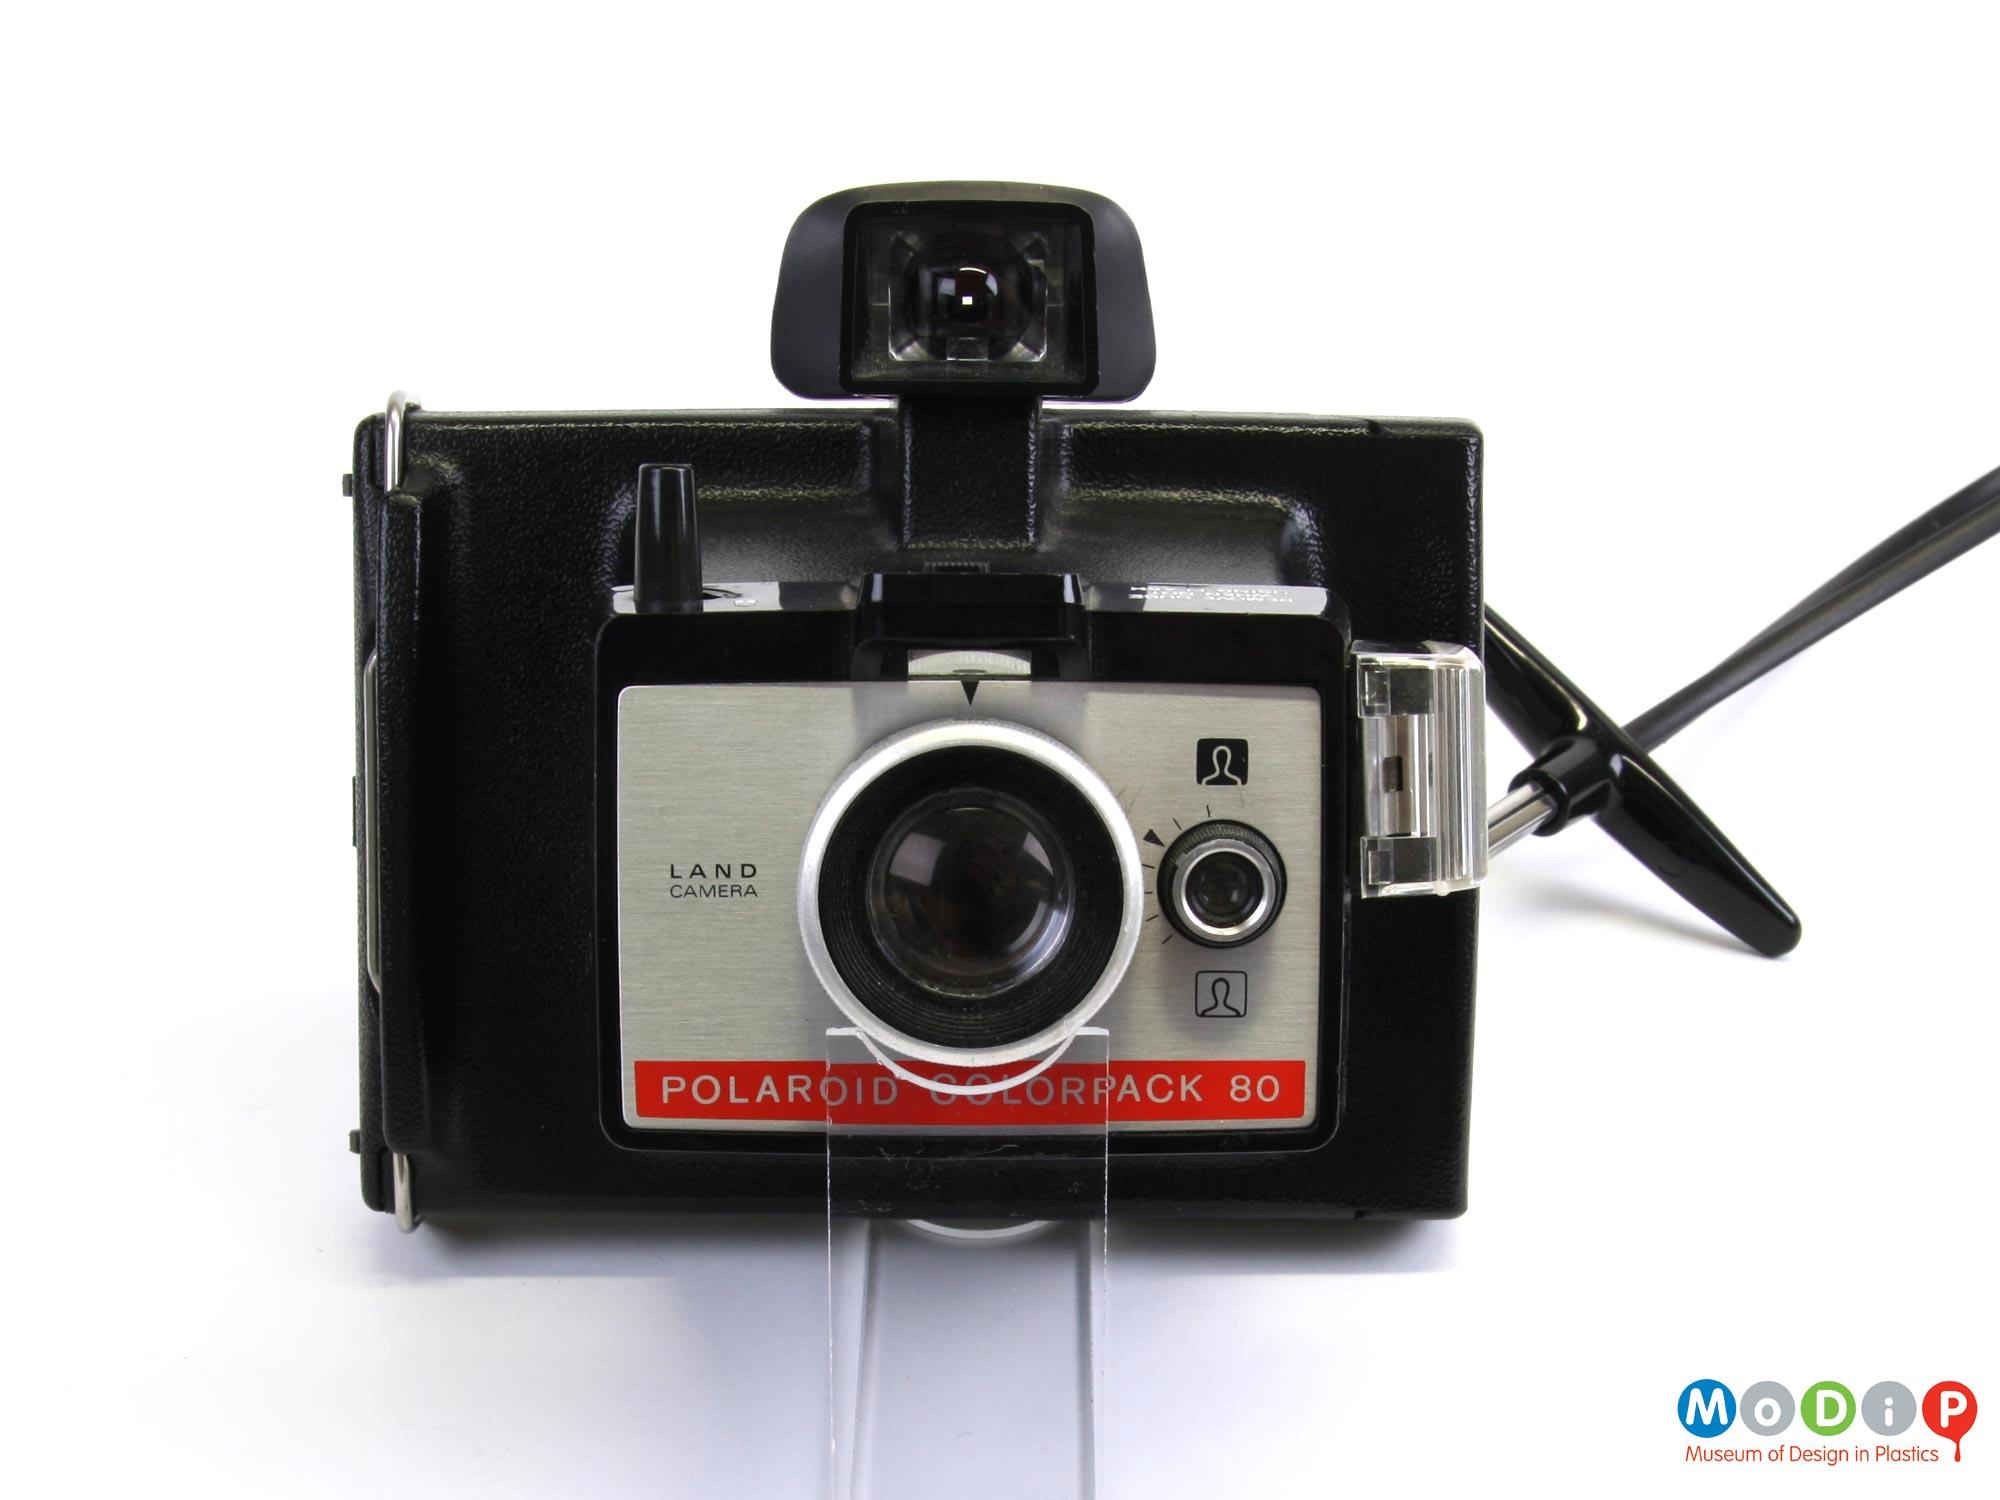 Polaroid Colorpack 80 Land camera | Museum of Design in Plastics